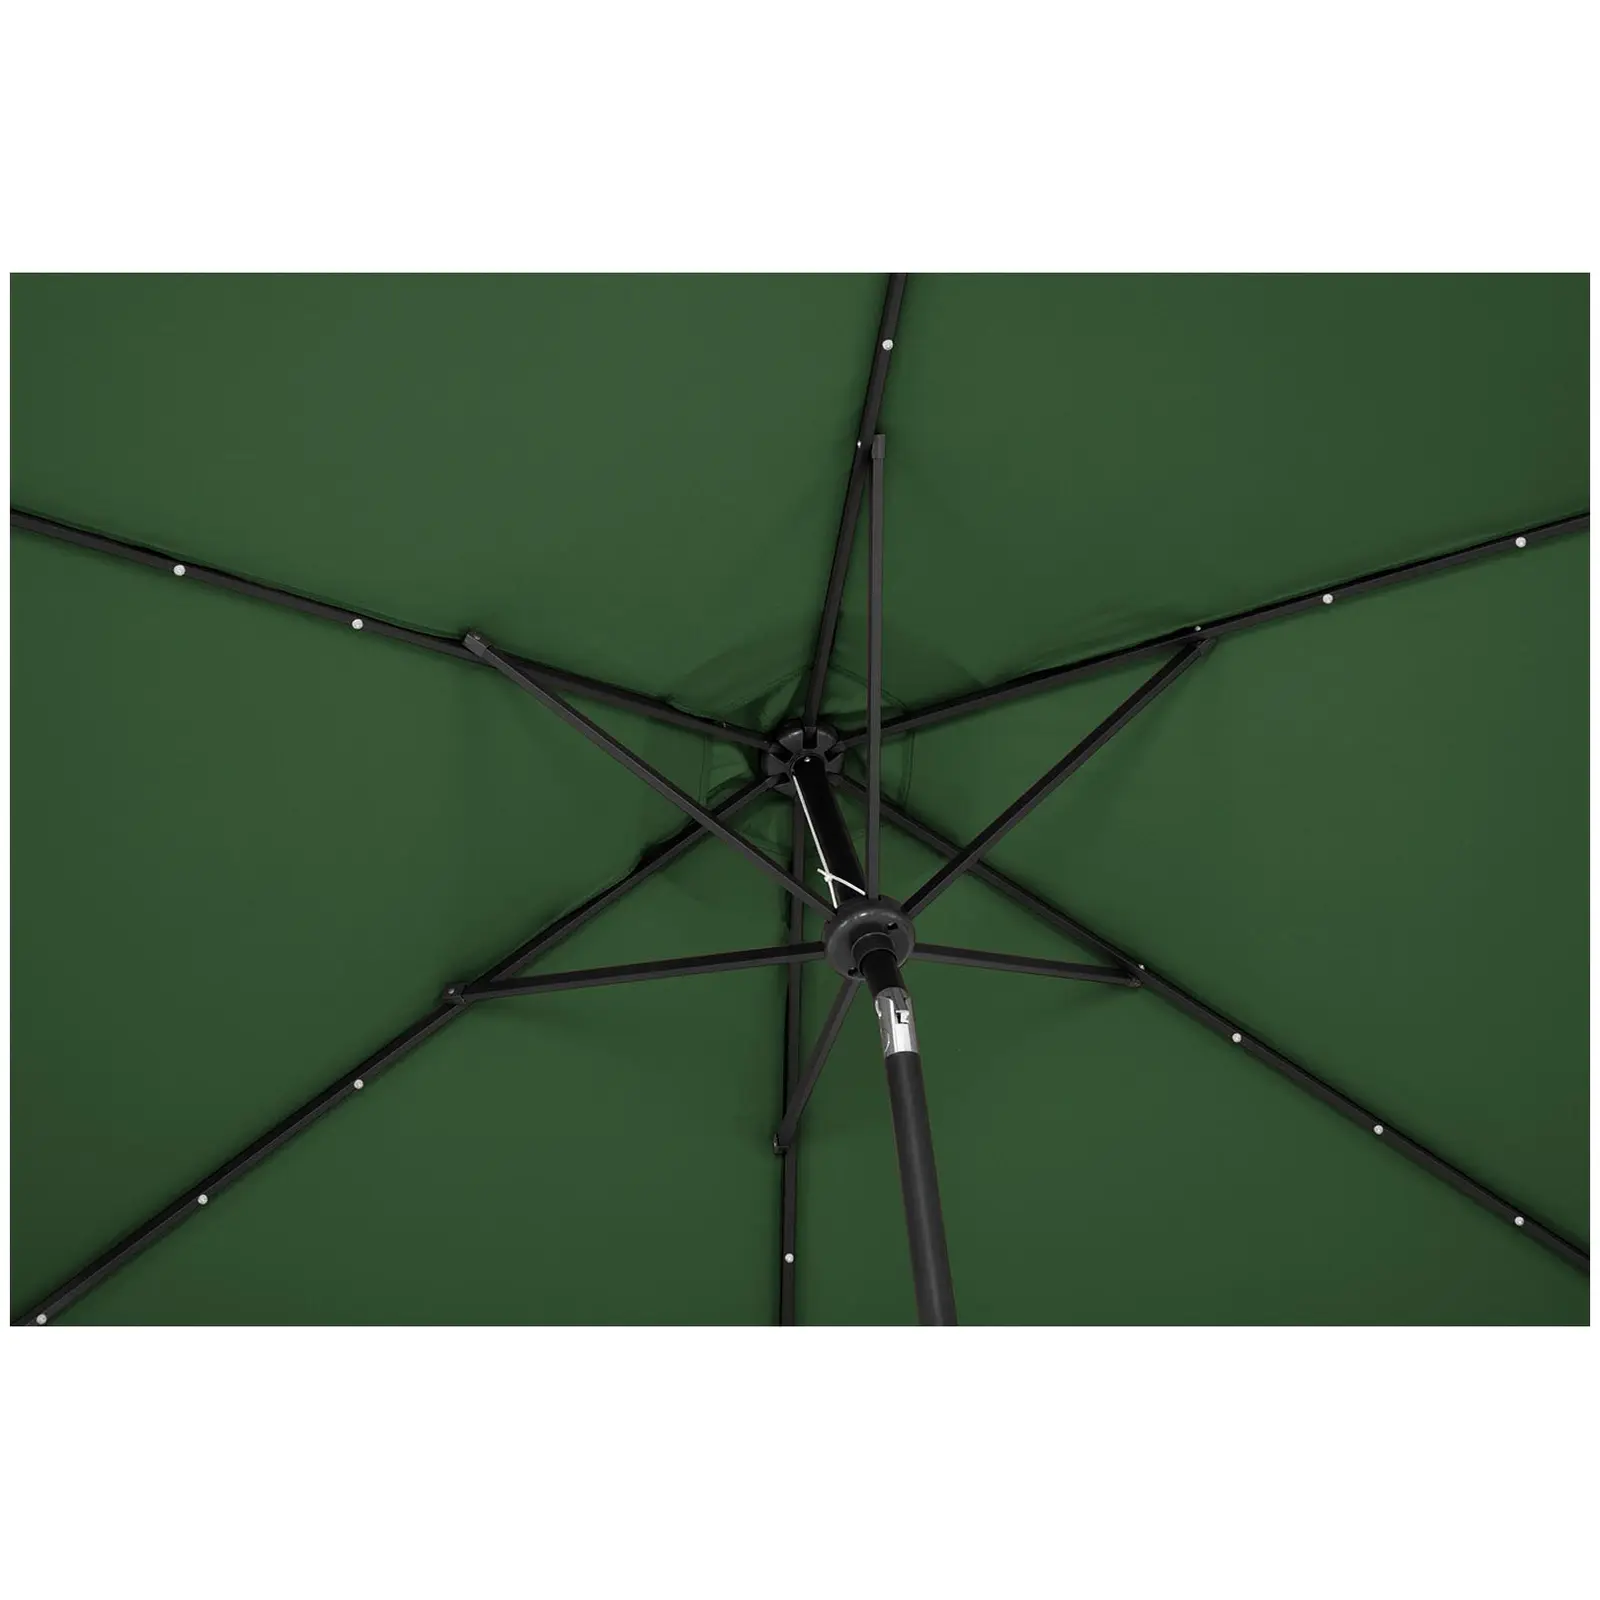 B-varer Parasoll med LED - grønn - rund - Ø 300 cm - kan skråstilles